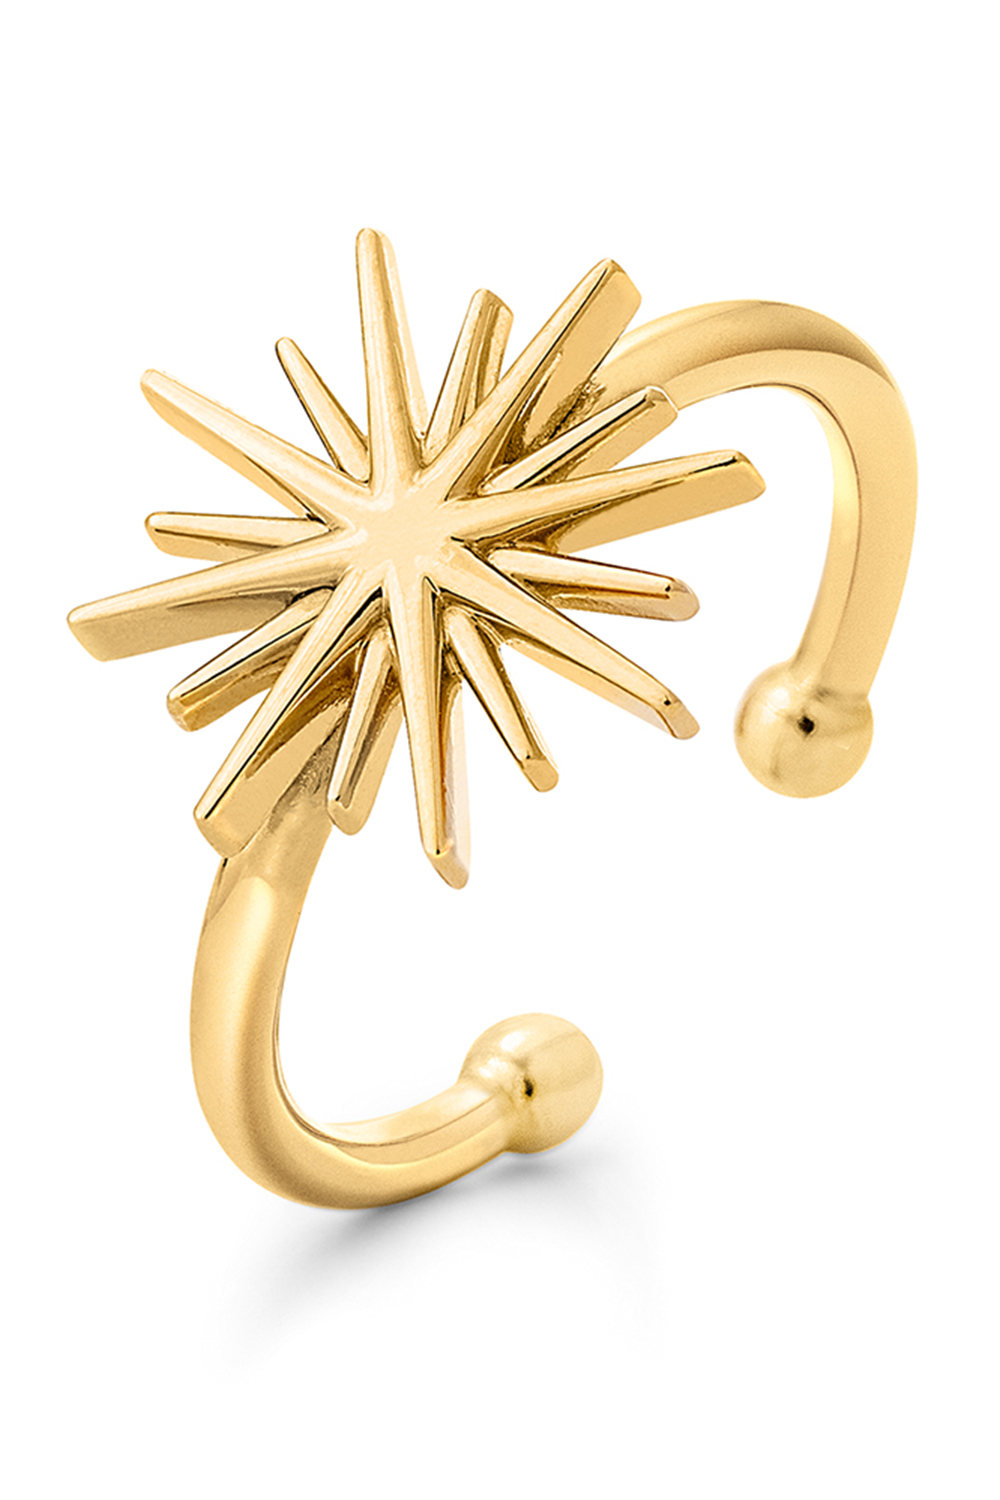 FOLLI FOLLIE – Γυναικείο ασημένιο δαχτυλίδι FOLLI FOLLIE WISHING ON χρυσό 1R19S026Y